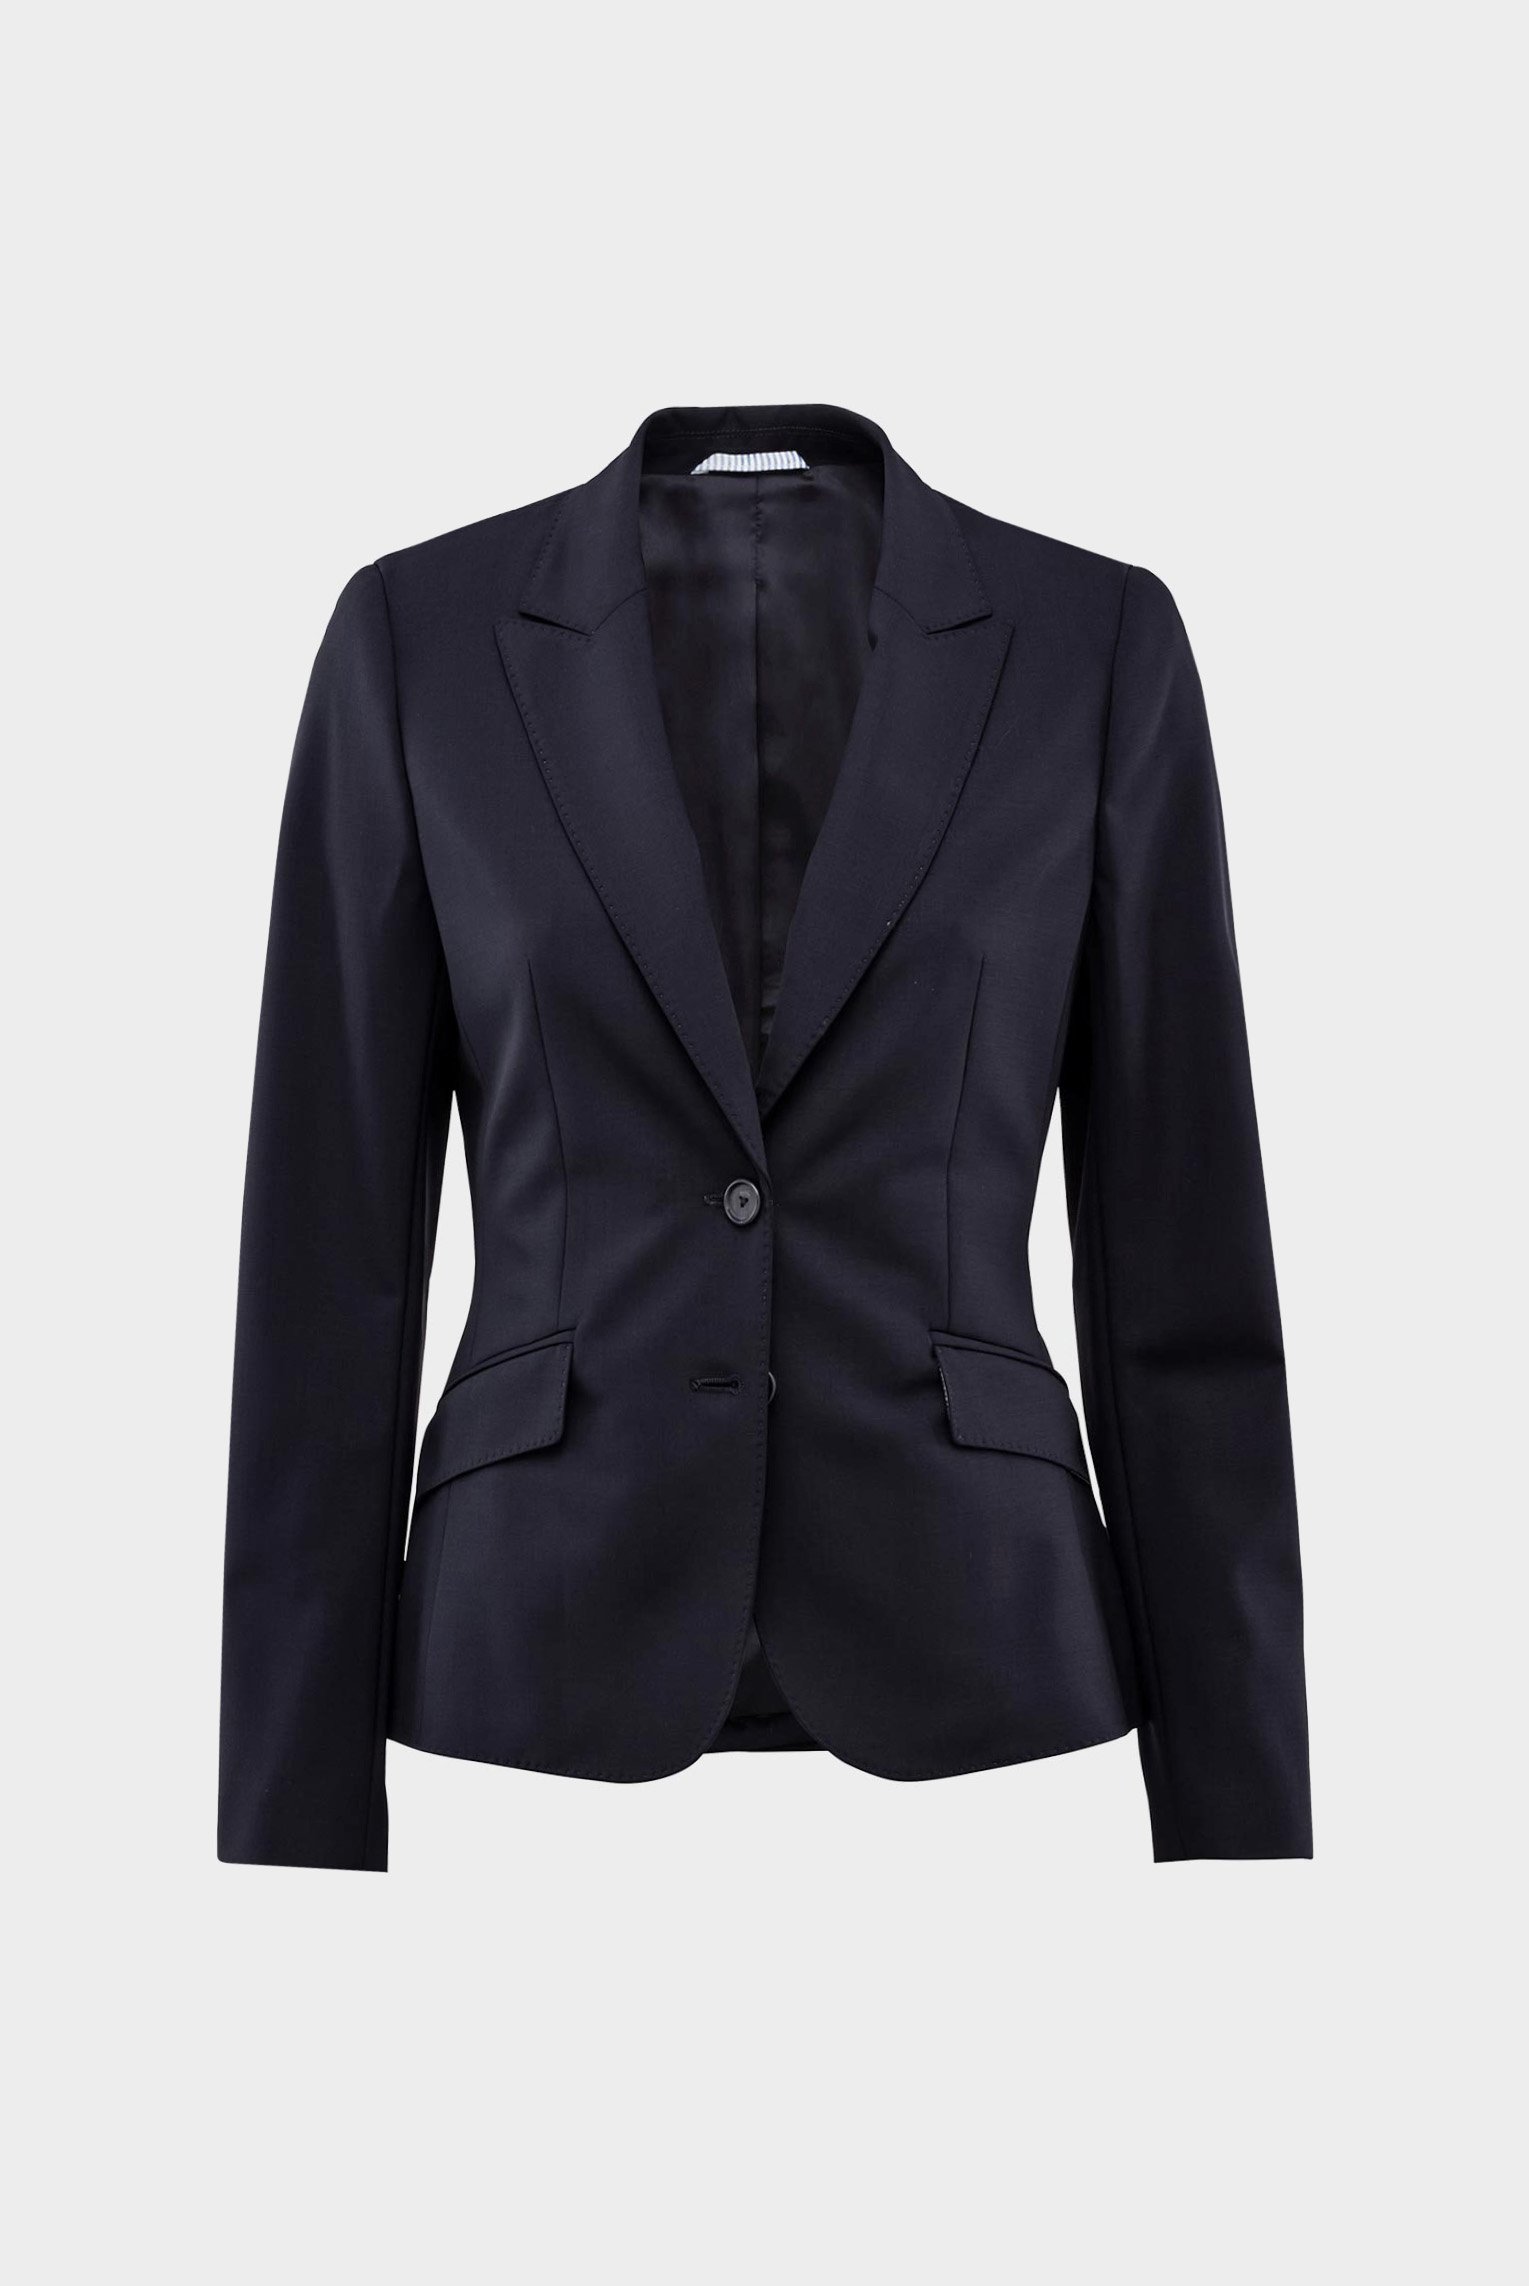 Blazers+Jiny - classic business blazer in wool-stretch+04.6085.07.H00528.790.40